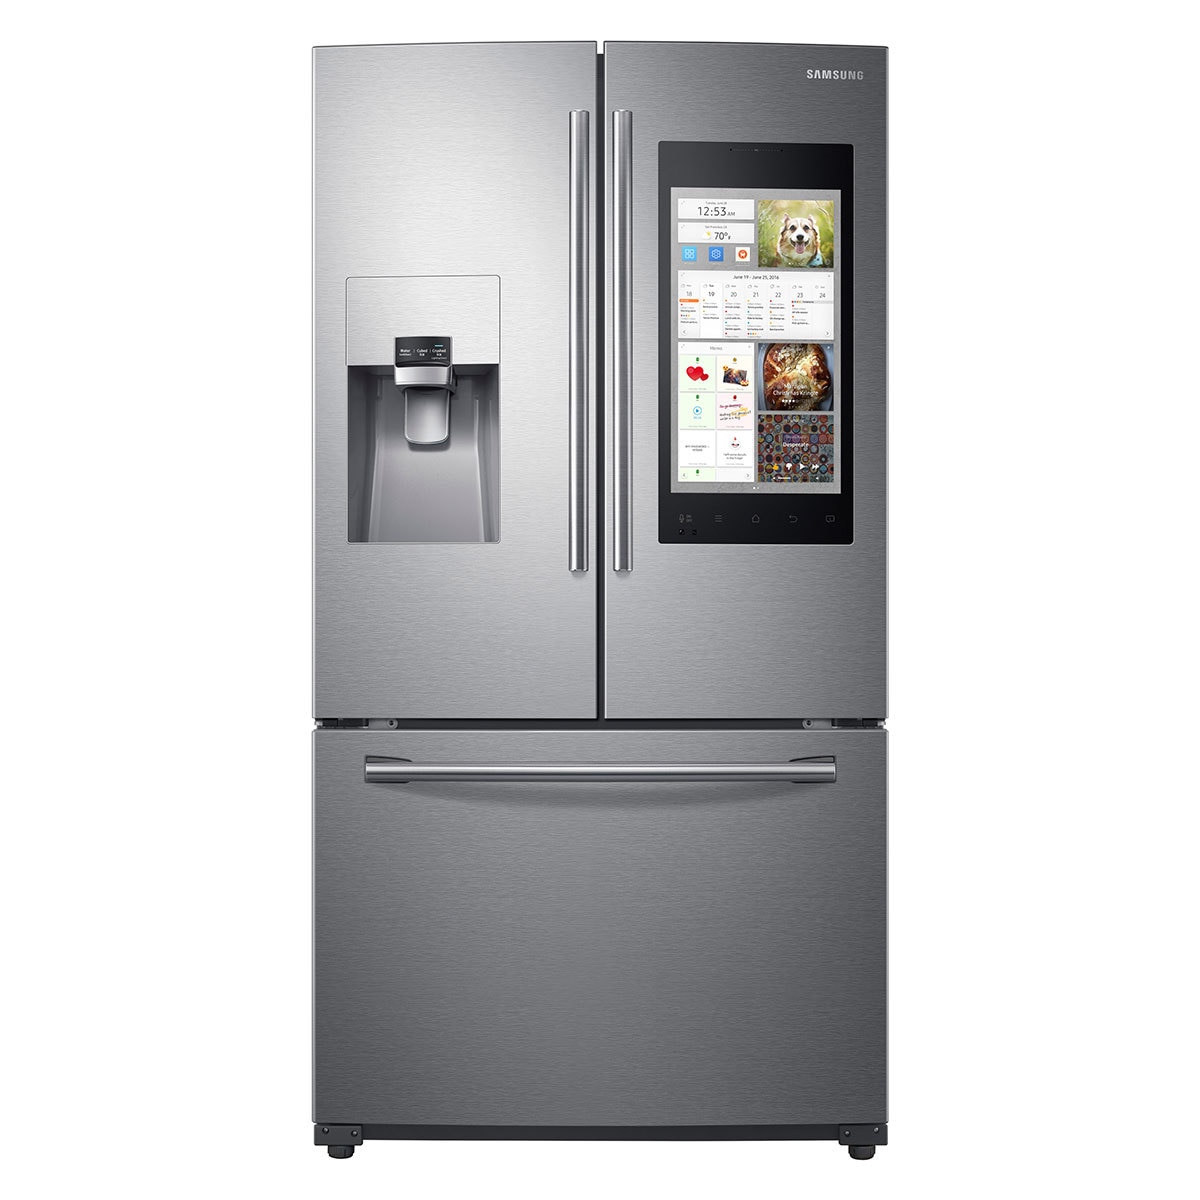 Refrigerador Samsung de 24' French Door Family Hub, Color Acero